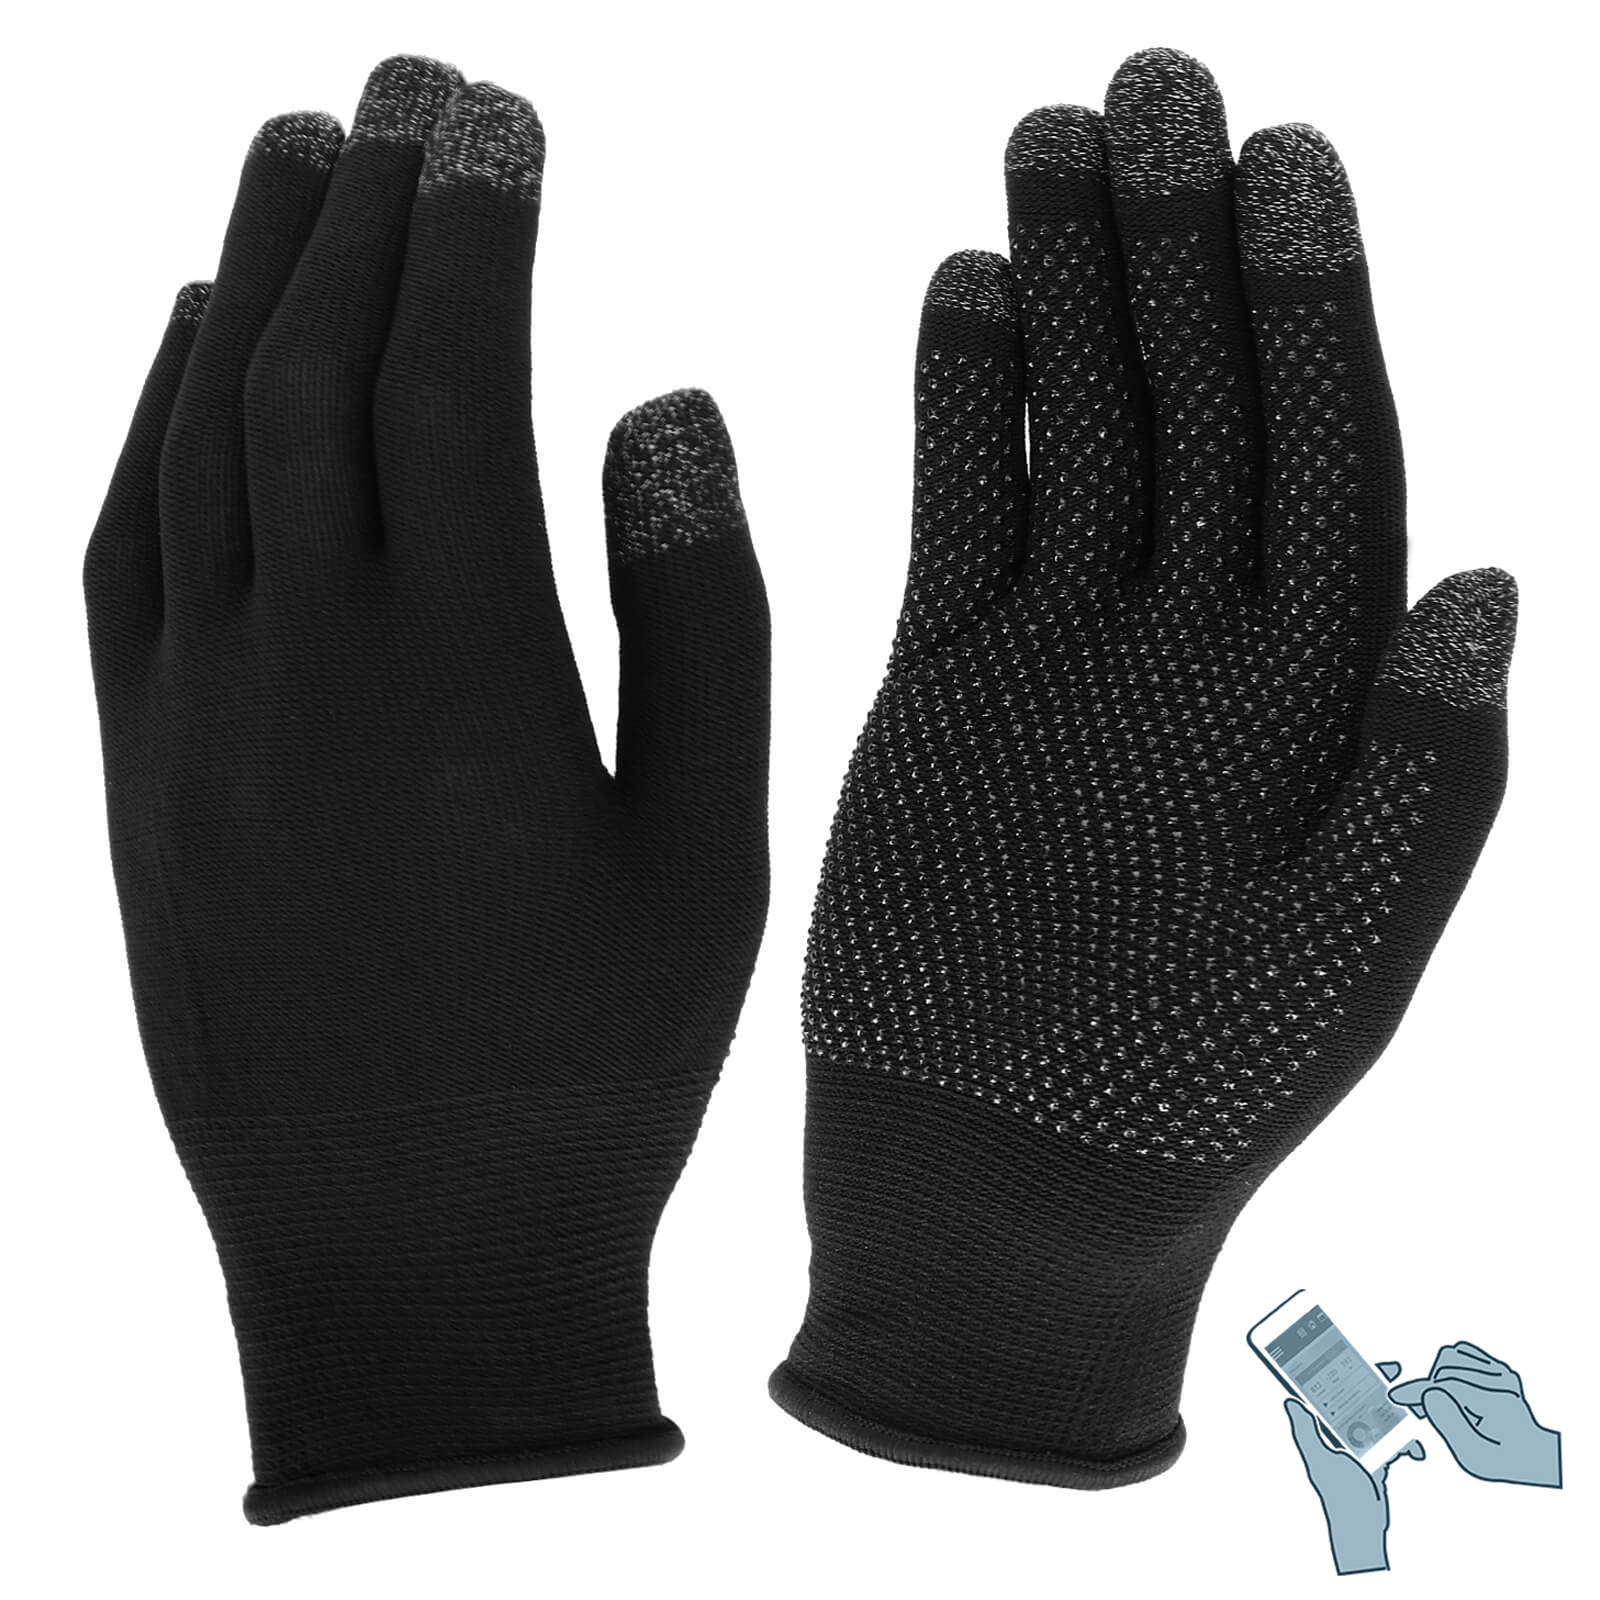 Coffret bonnet bluetooth® gants tactiles